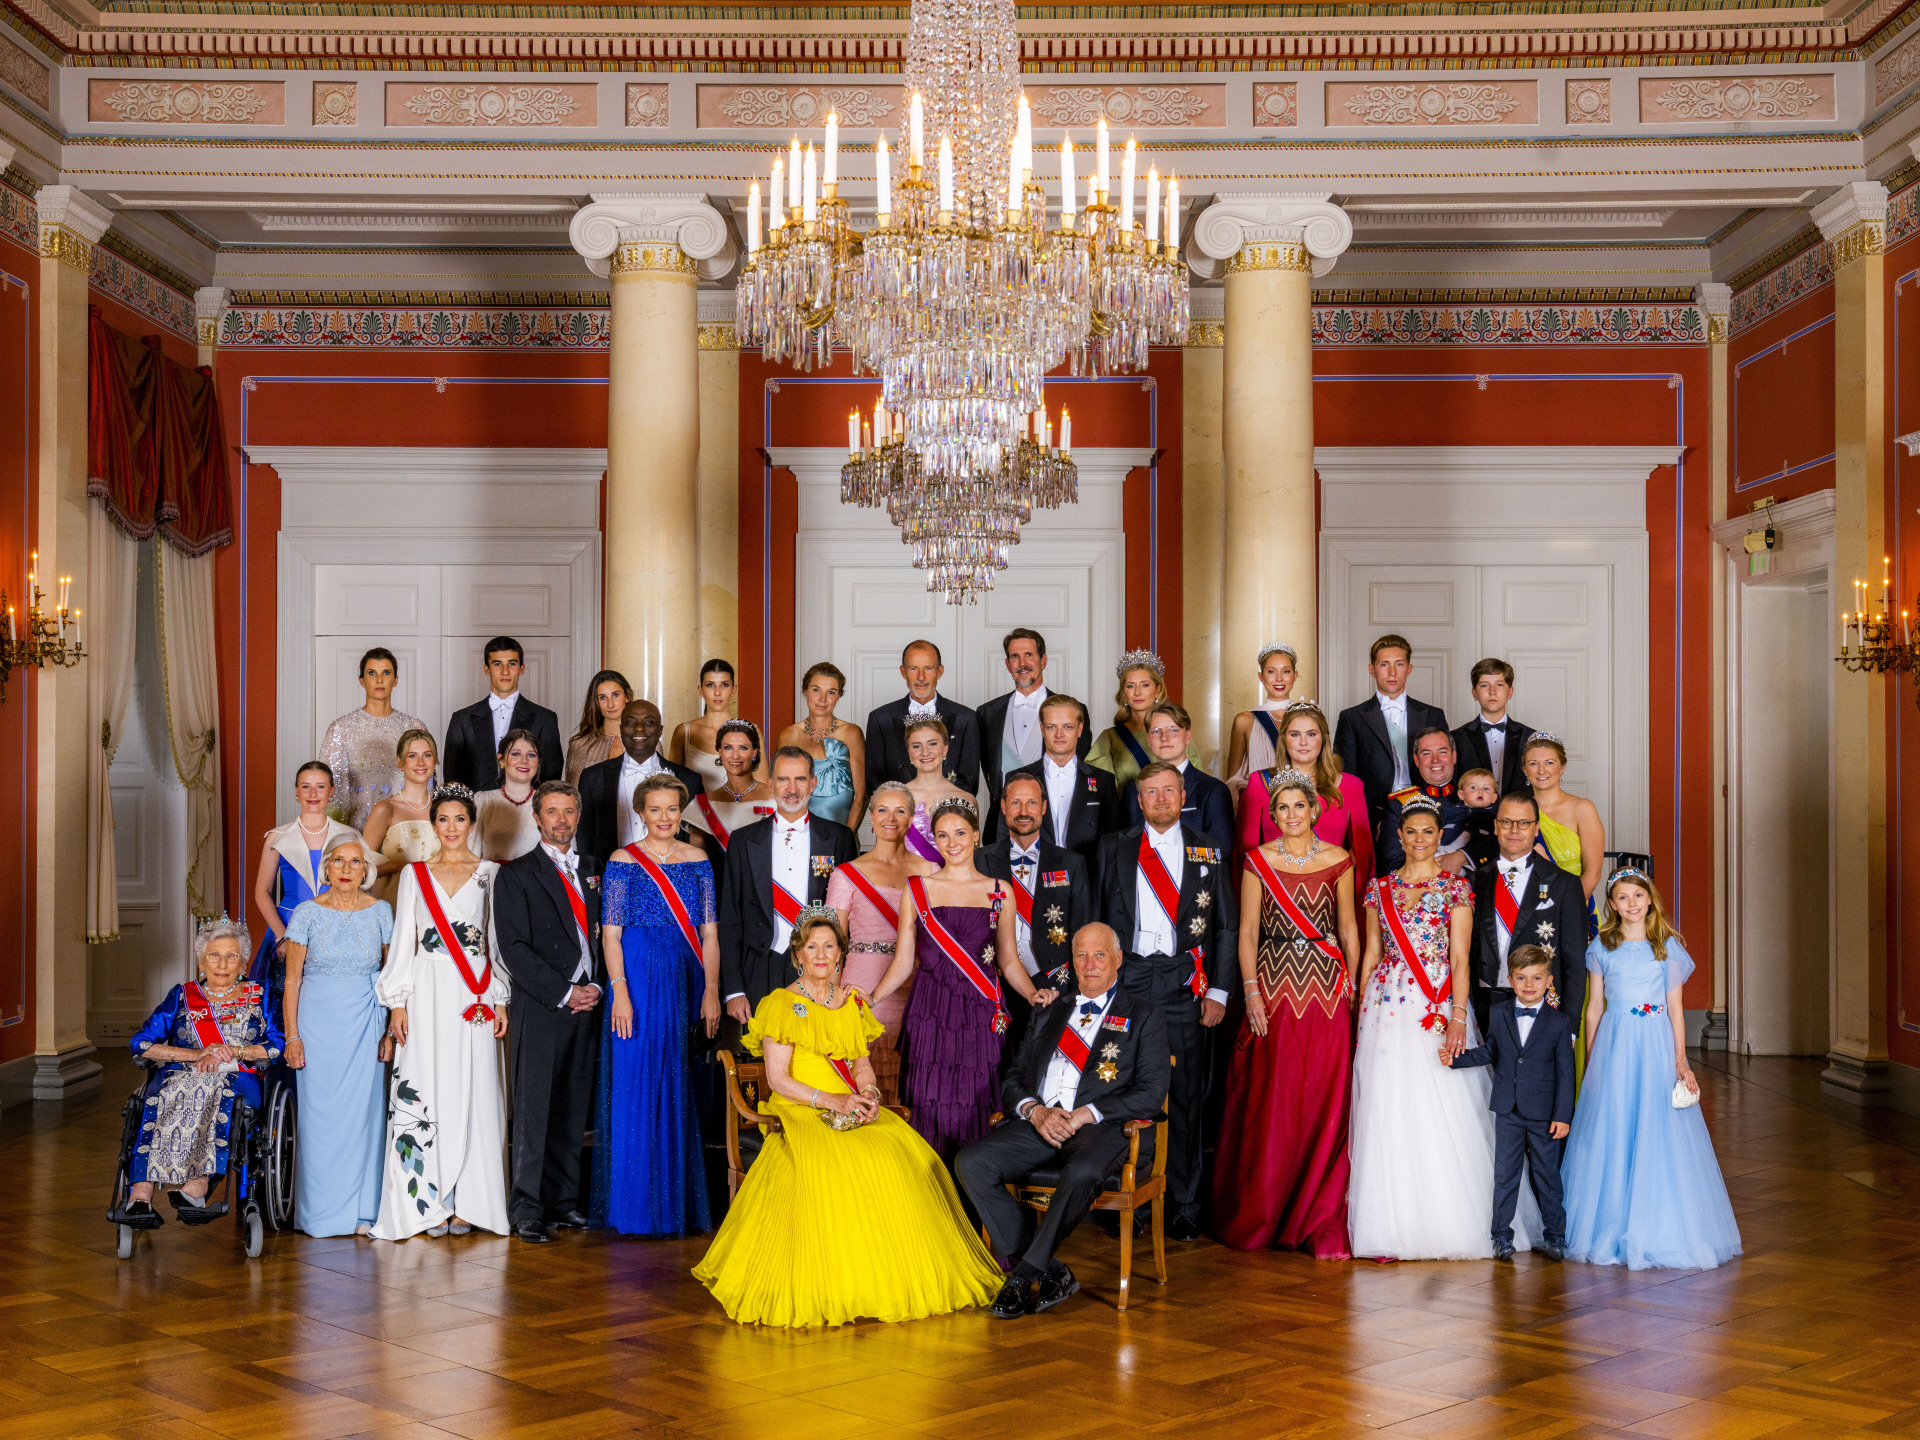 El cumpleaños de Ingrid de Noruega se ha convertido en la gran cita de la realeza europea de los últimos años. Han enviado representación a la gala todas las casas reales y principescas reinantes excepto la de Reino Unido, la de Mónaco, y la de Liechtenstein.